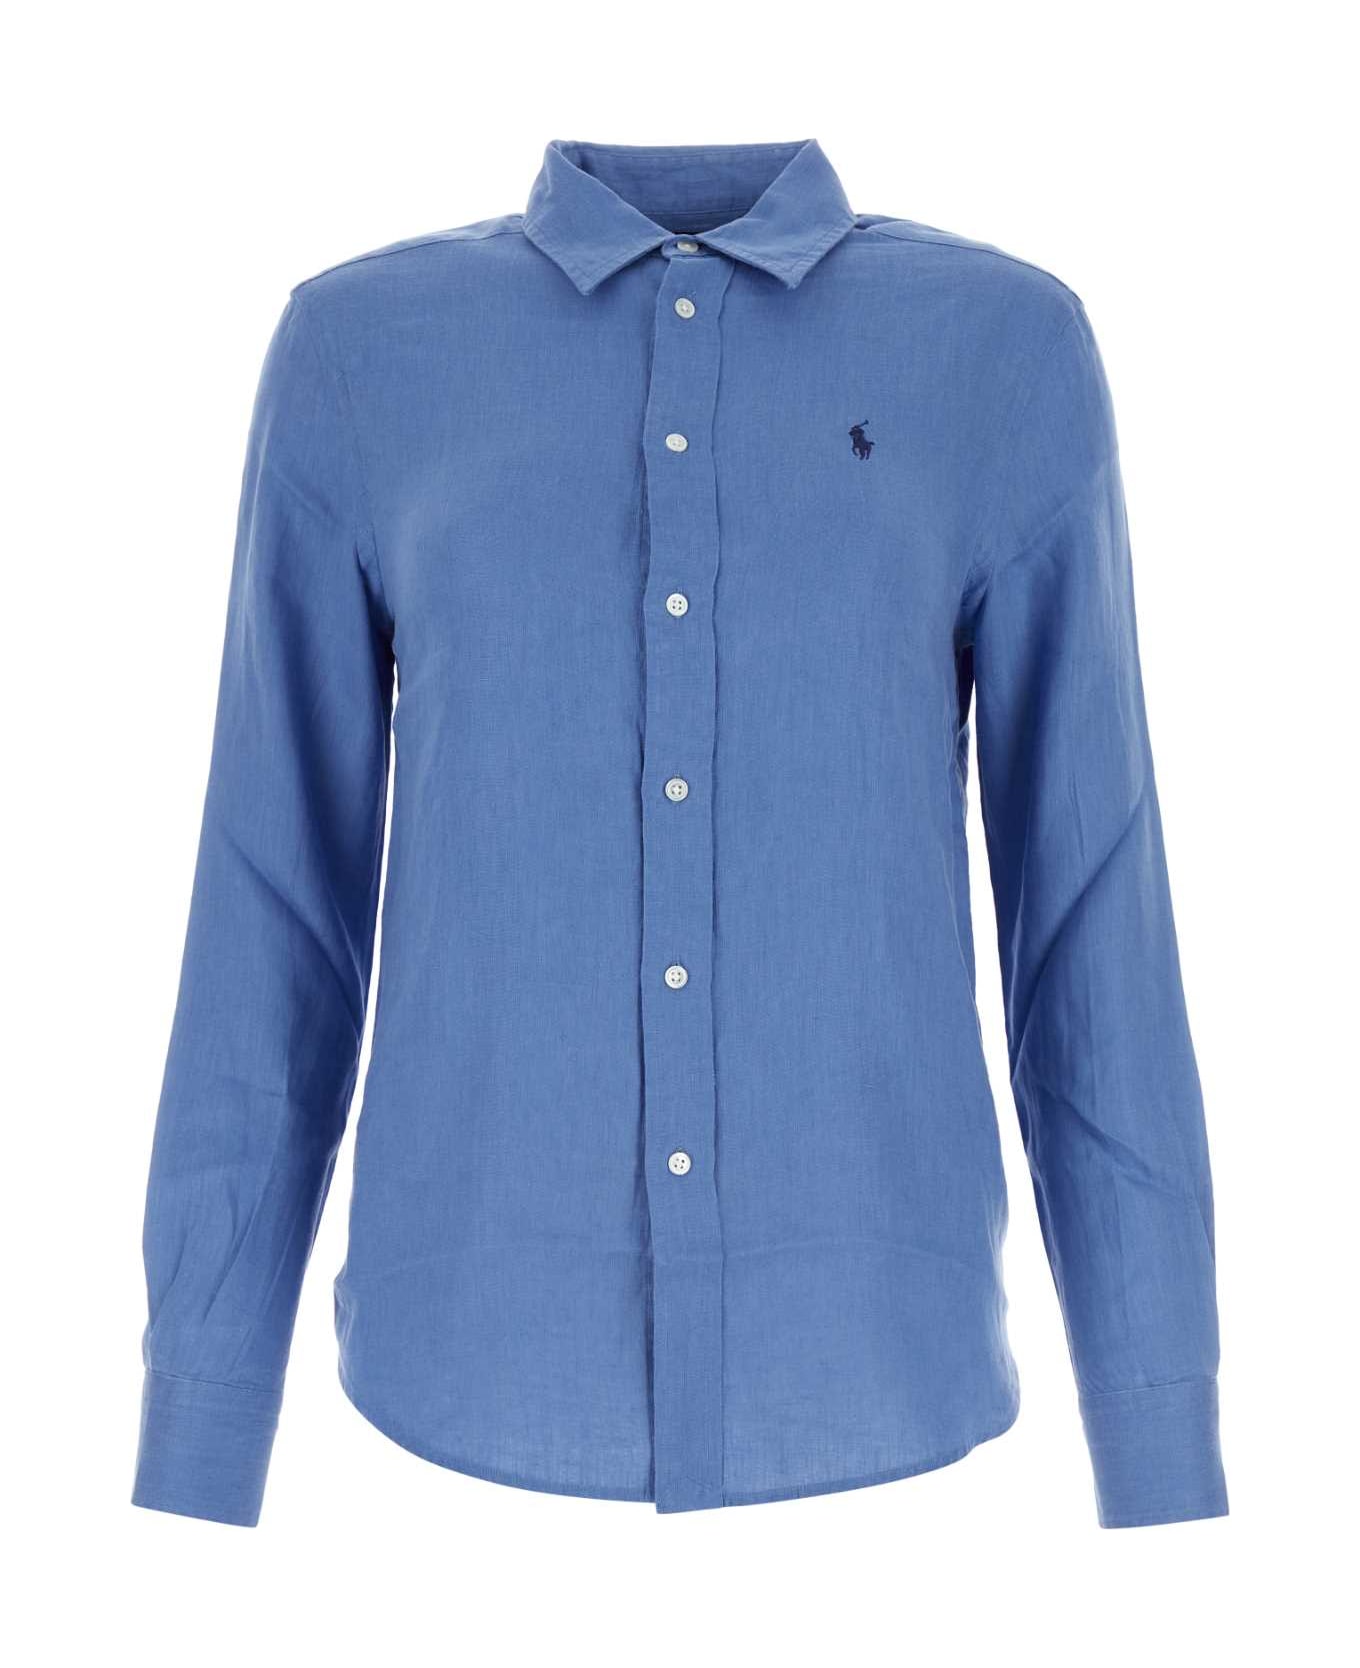 Polo Ralph Lauren Turquoise Linen Shirt - RIGBLUE